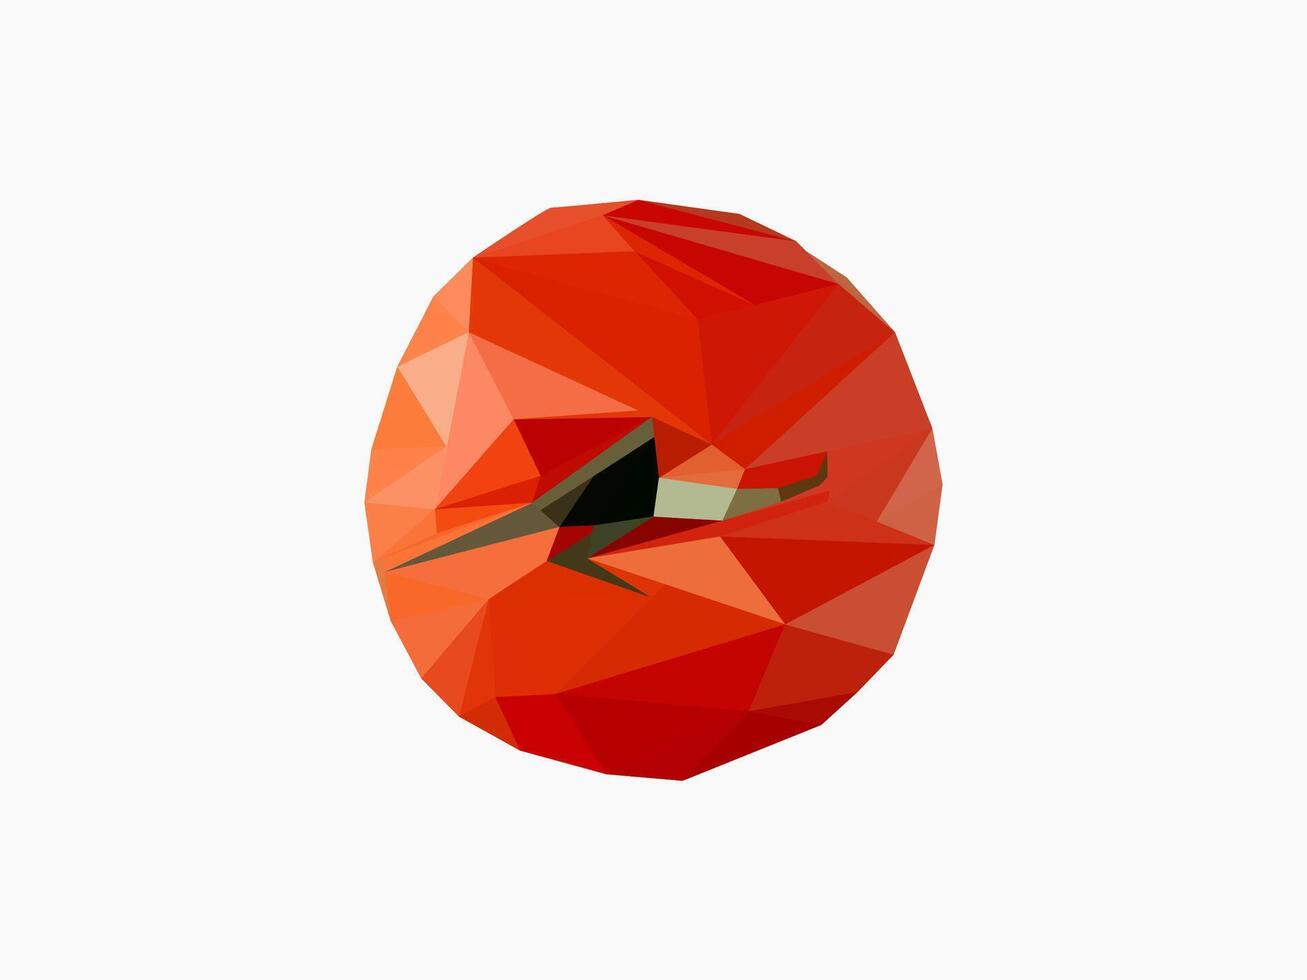 Tomate Polygon Kunst von oben Sicht. niedrig poly Illustration Symbole vektor